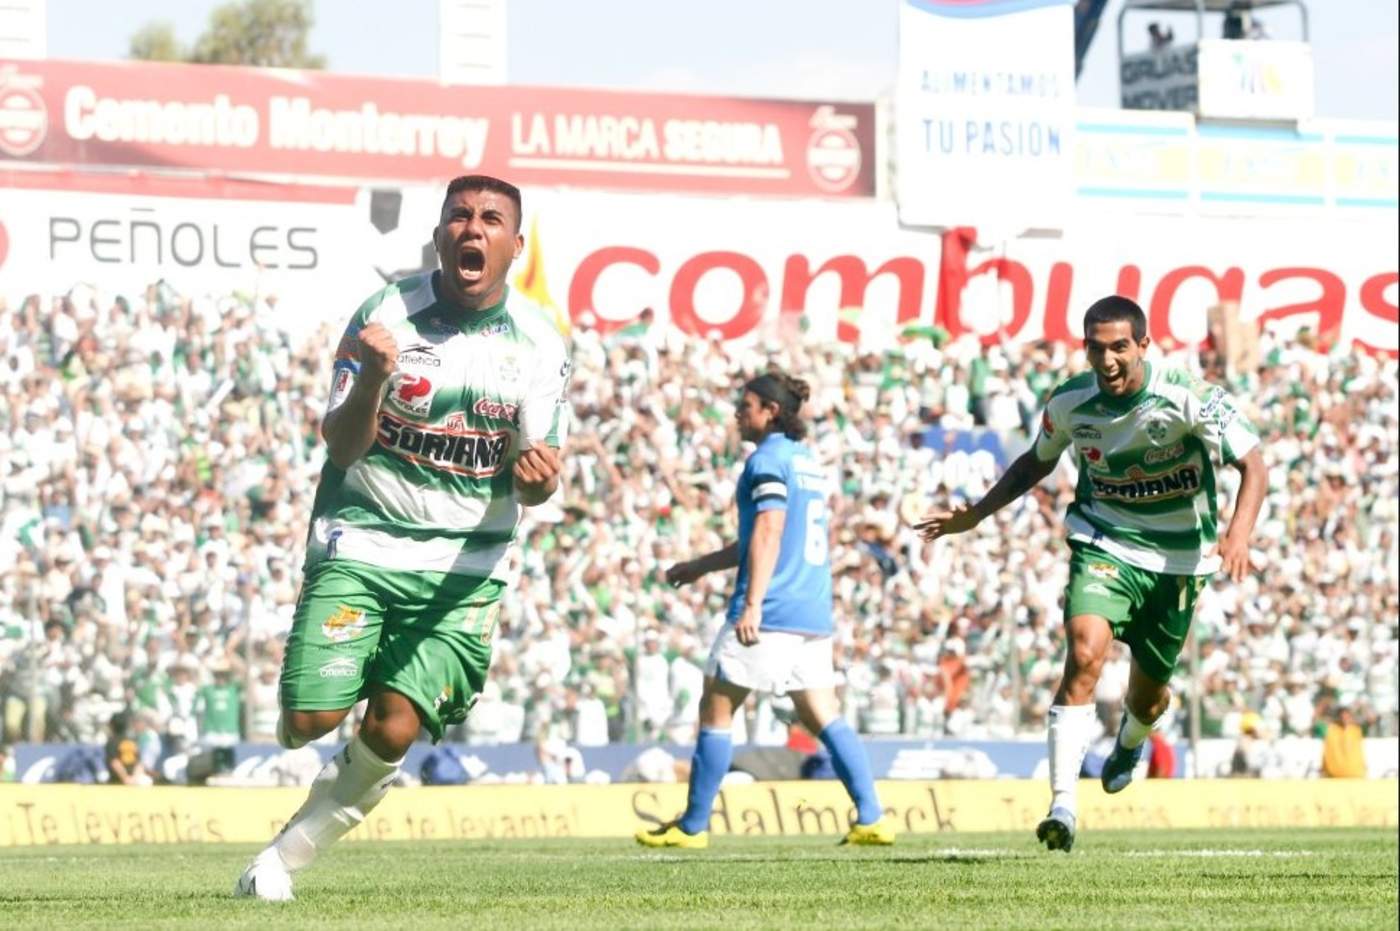 “Va a perdurar toda mi vida”, escribió Daniel “Hachita” Ludueña ayer en redes sociales al recordar Santos Laguna, que con su gol en la final contra Cruz Azul. (ESPECIAL)